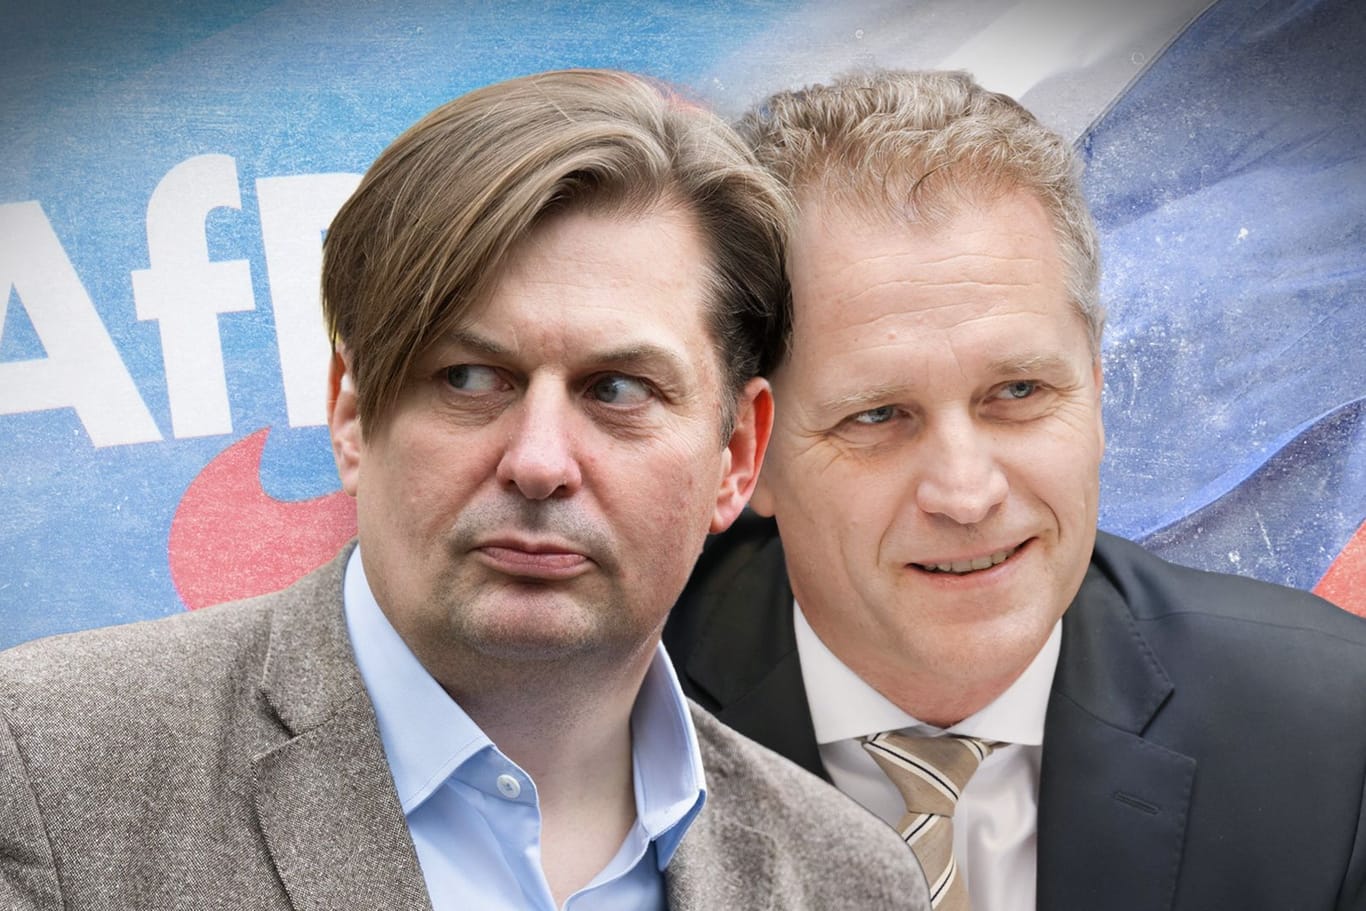 Die AfD-Listenkandidaten 1 und 2 für die Europawahl: Sie stehen im Zentrum der Spionage- und Schmiergeldaffäre, die nun auch Parteifreunde betrifft.